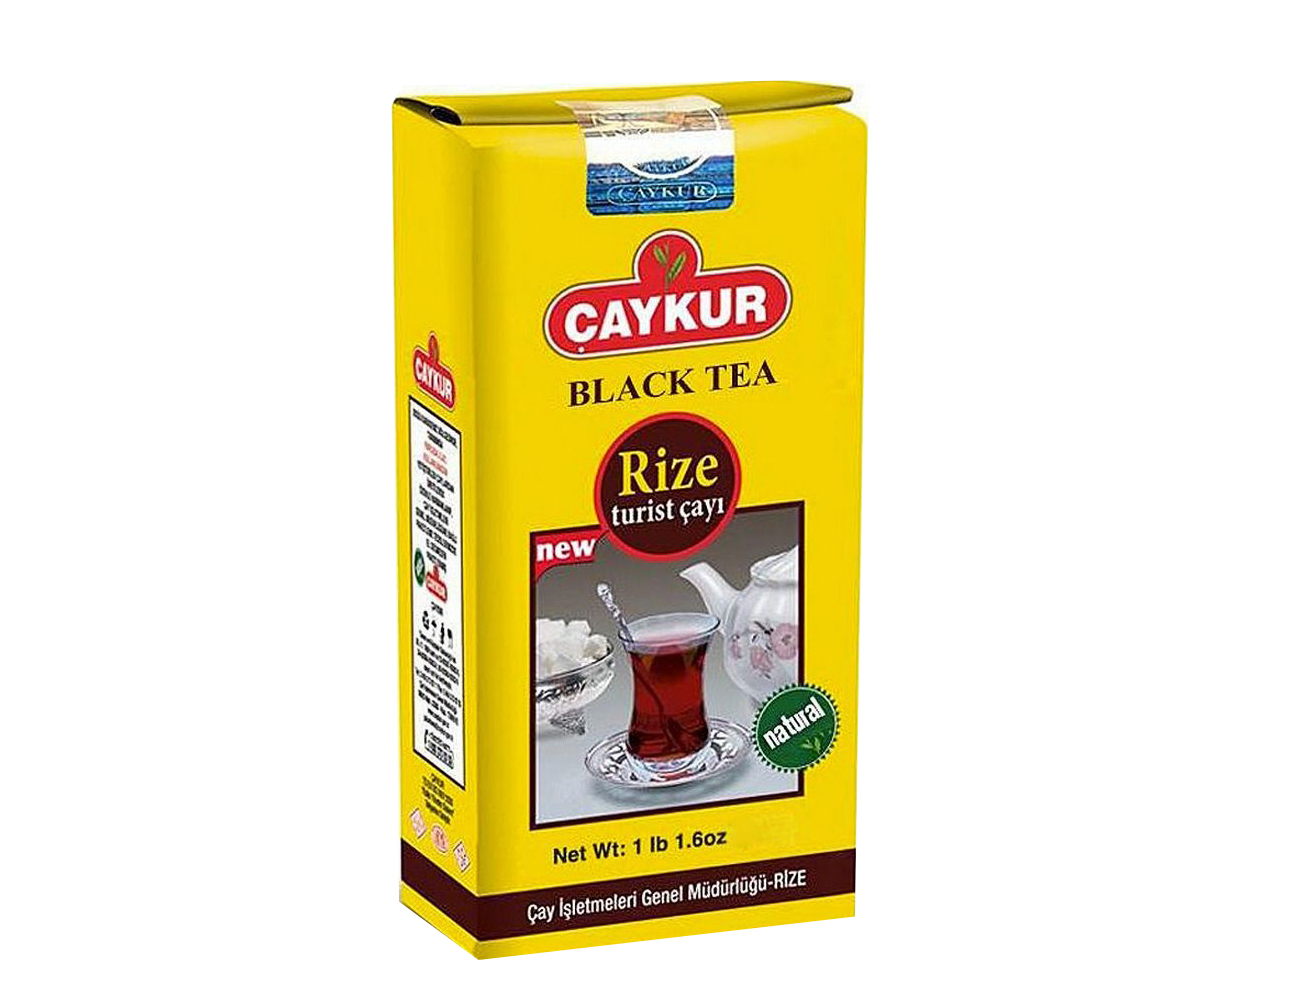 Чай черный Caykur Rize Turist cayi, 1000 гр. Турция